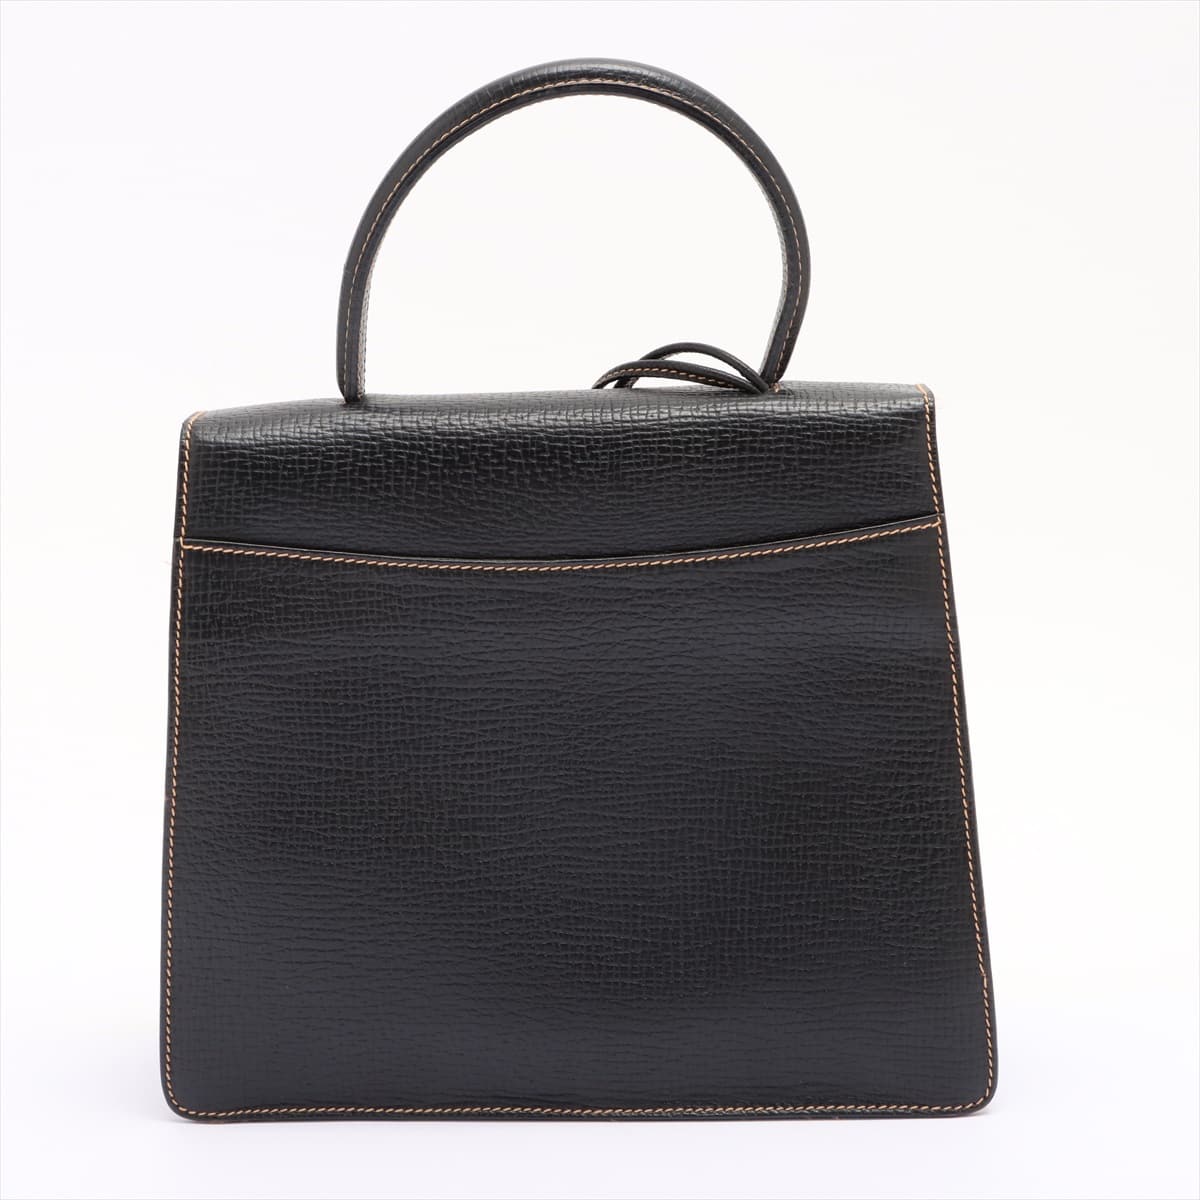 Loewe Barcelona Leather 2way handbag Black